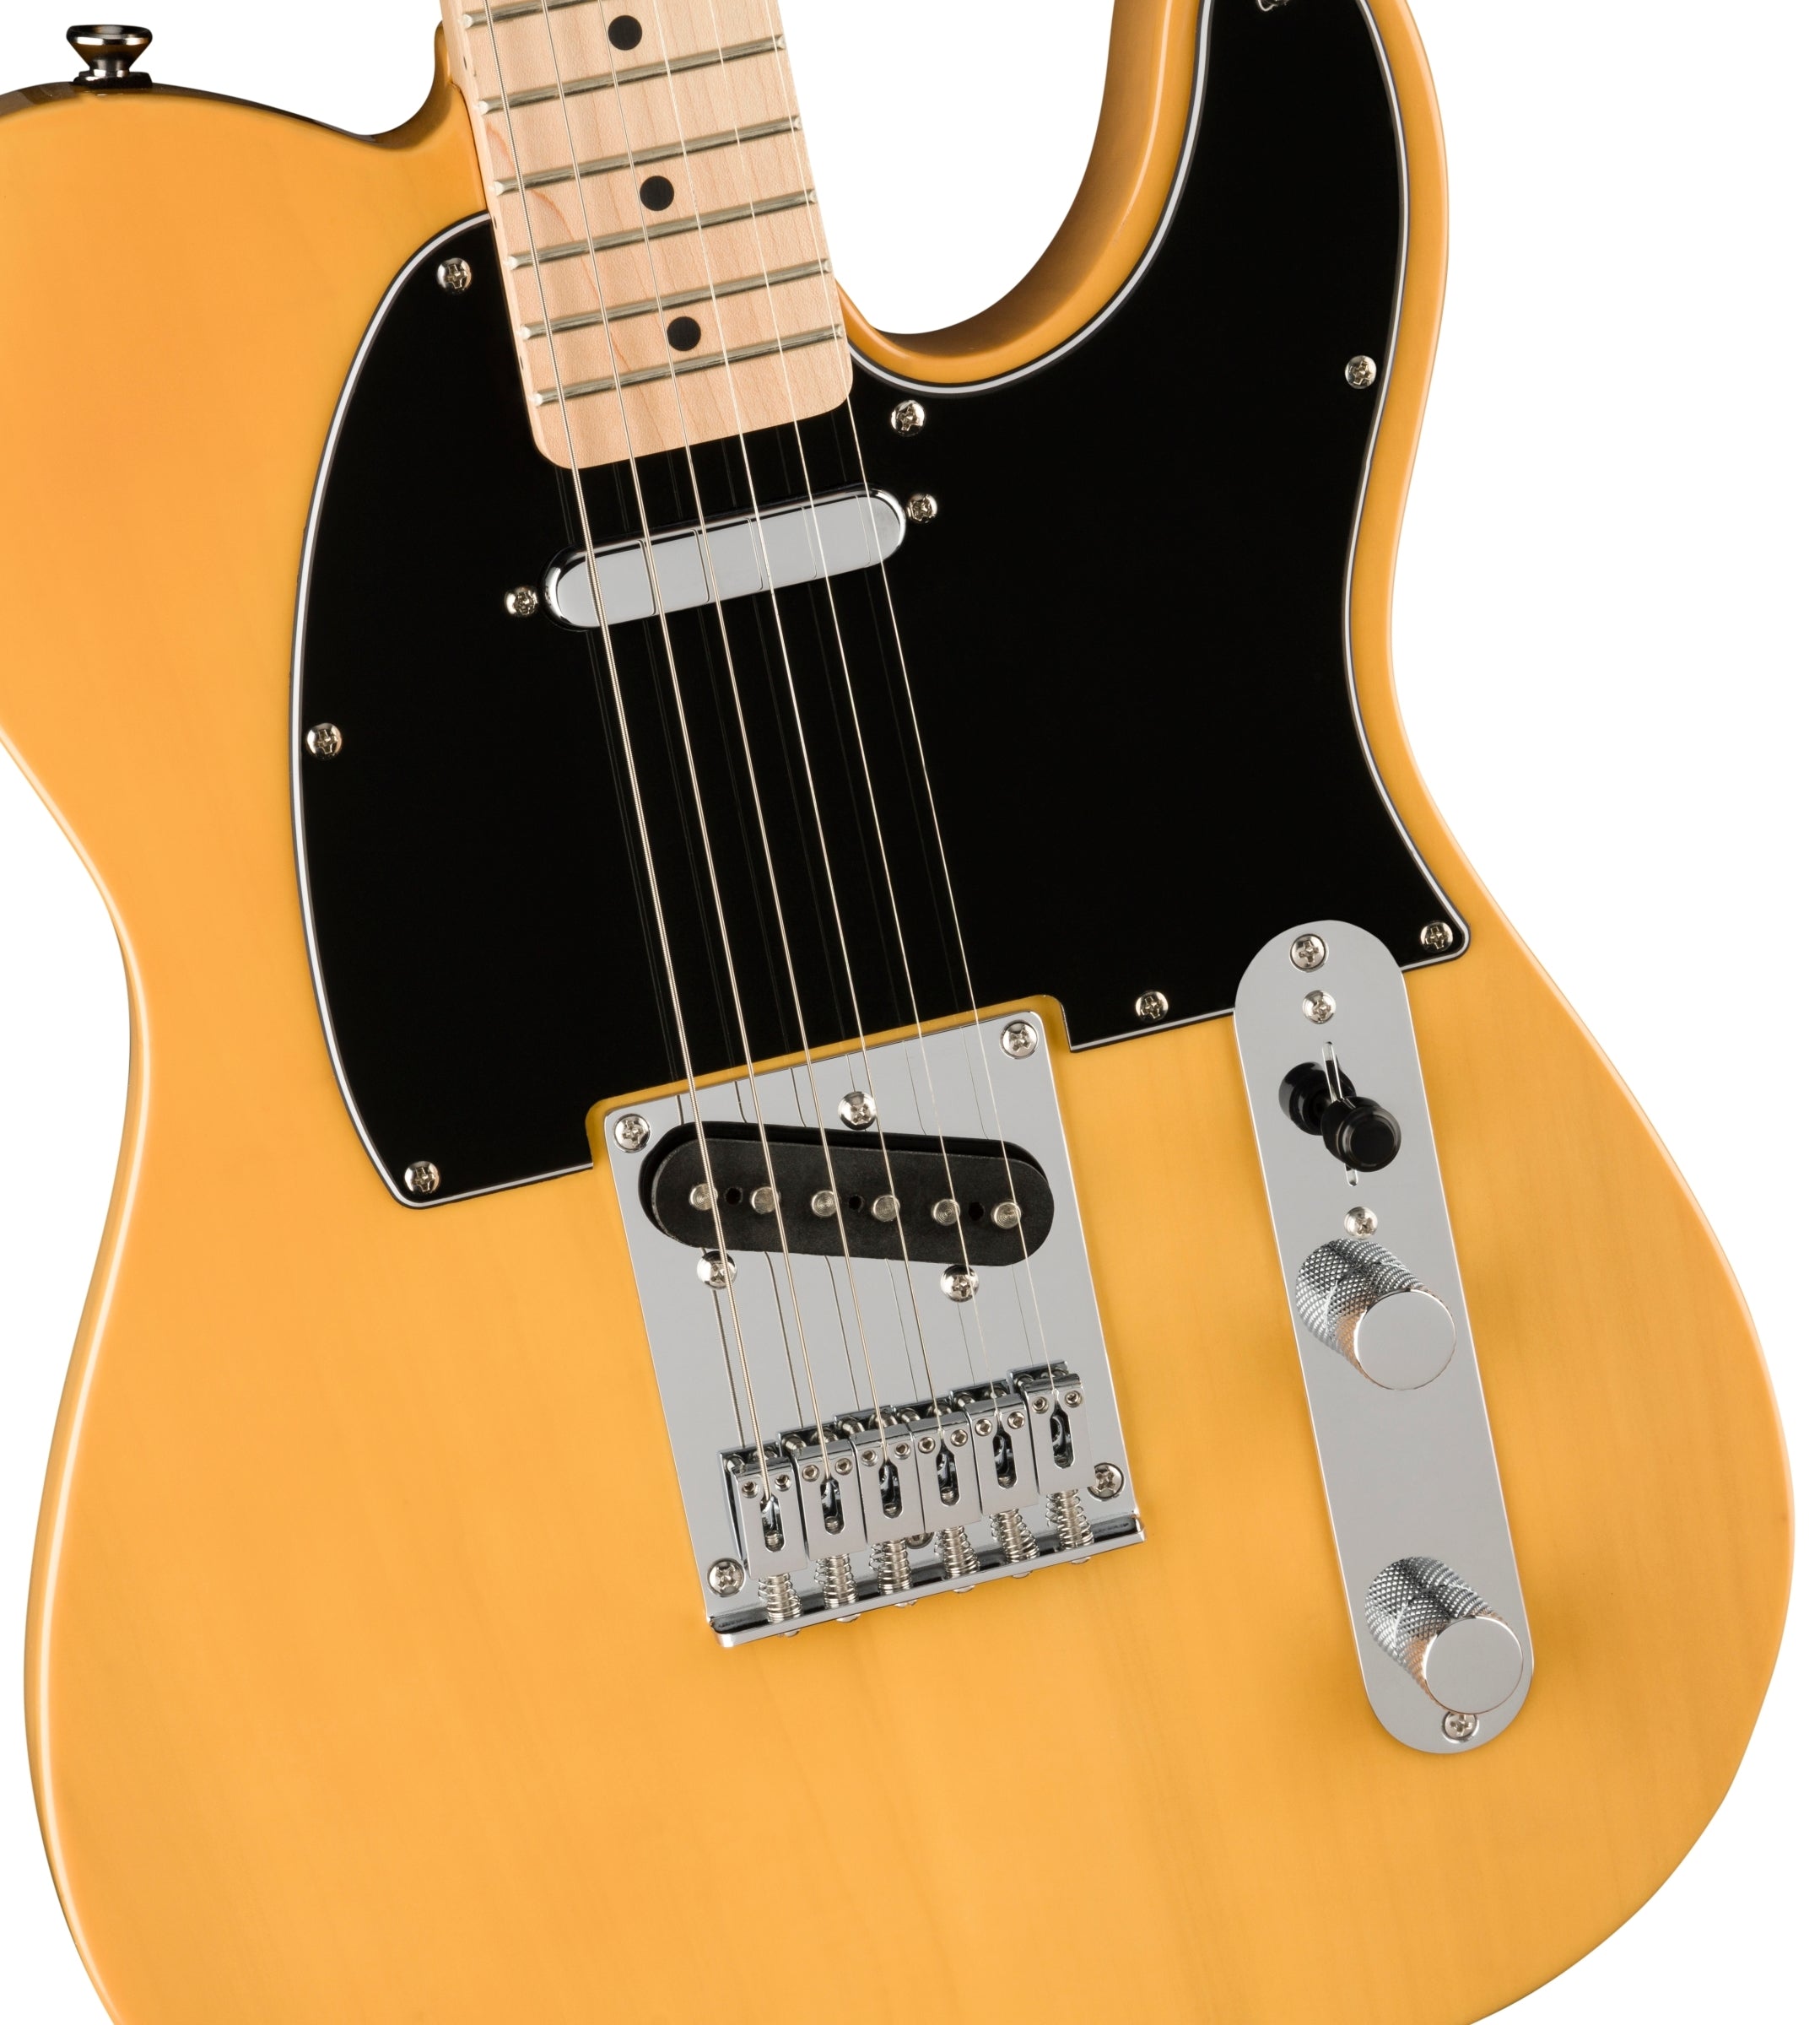 Consigue en miche tiendas una gran variedad de guitarras Fender que te brindan un diseño legendario y un tono por excelencia para el aspirante a héroe de la guitarra de hoy. 